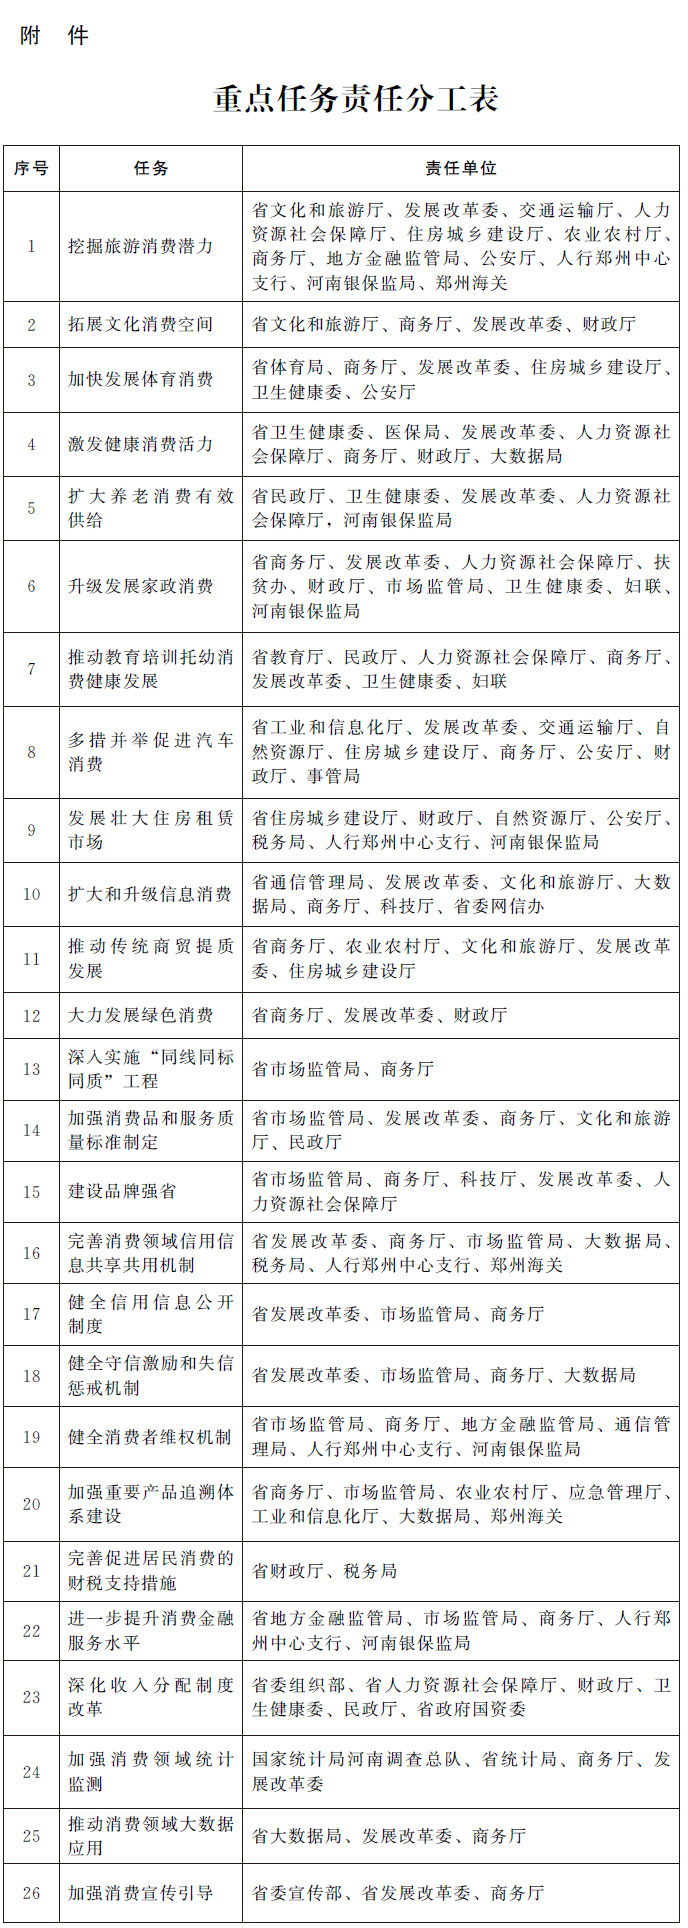 河南省人民政府办公厅关于印发河南省完善促进消费体制机制实施方案的通知